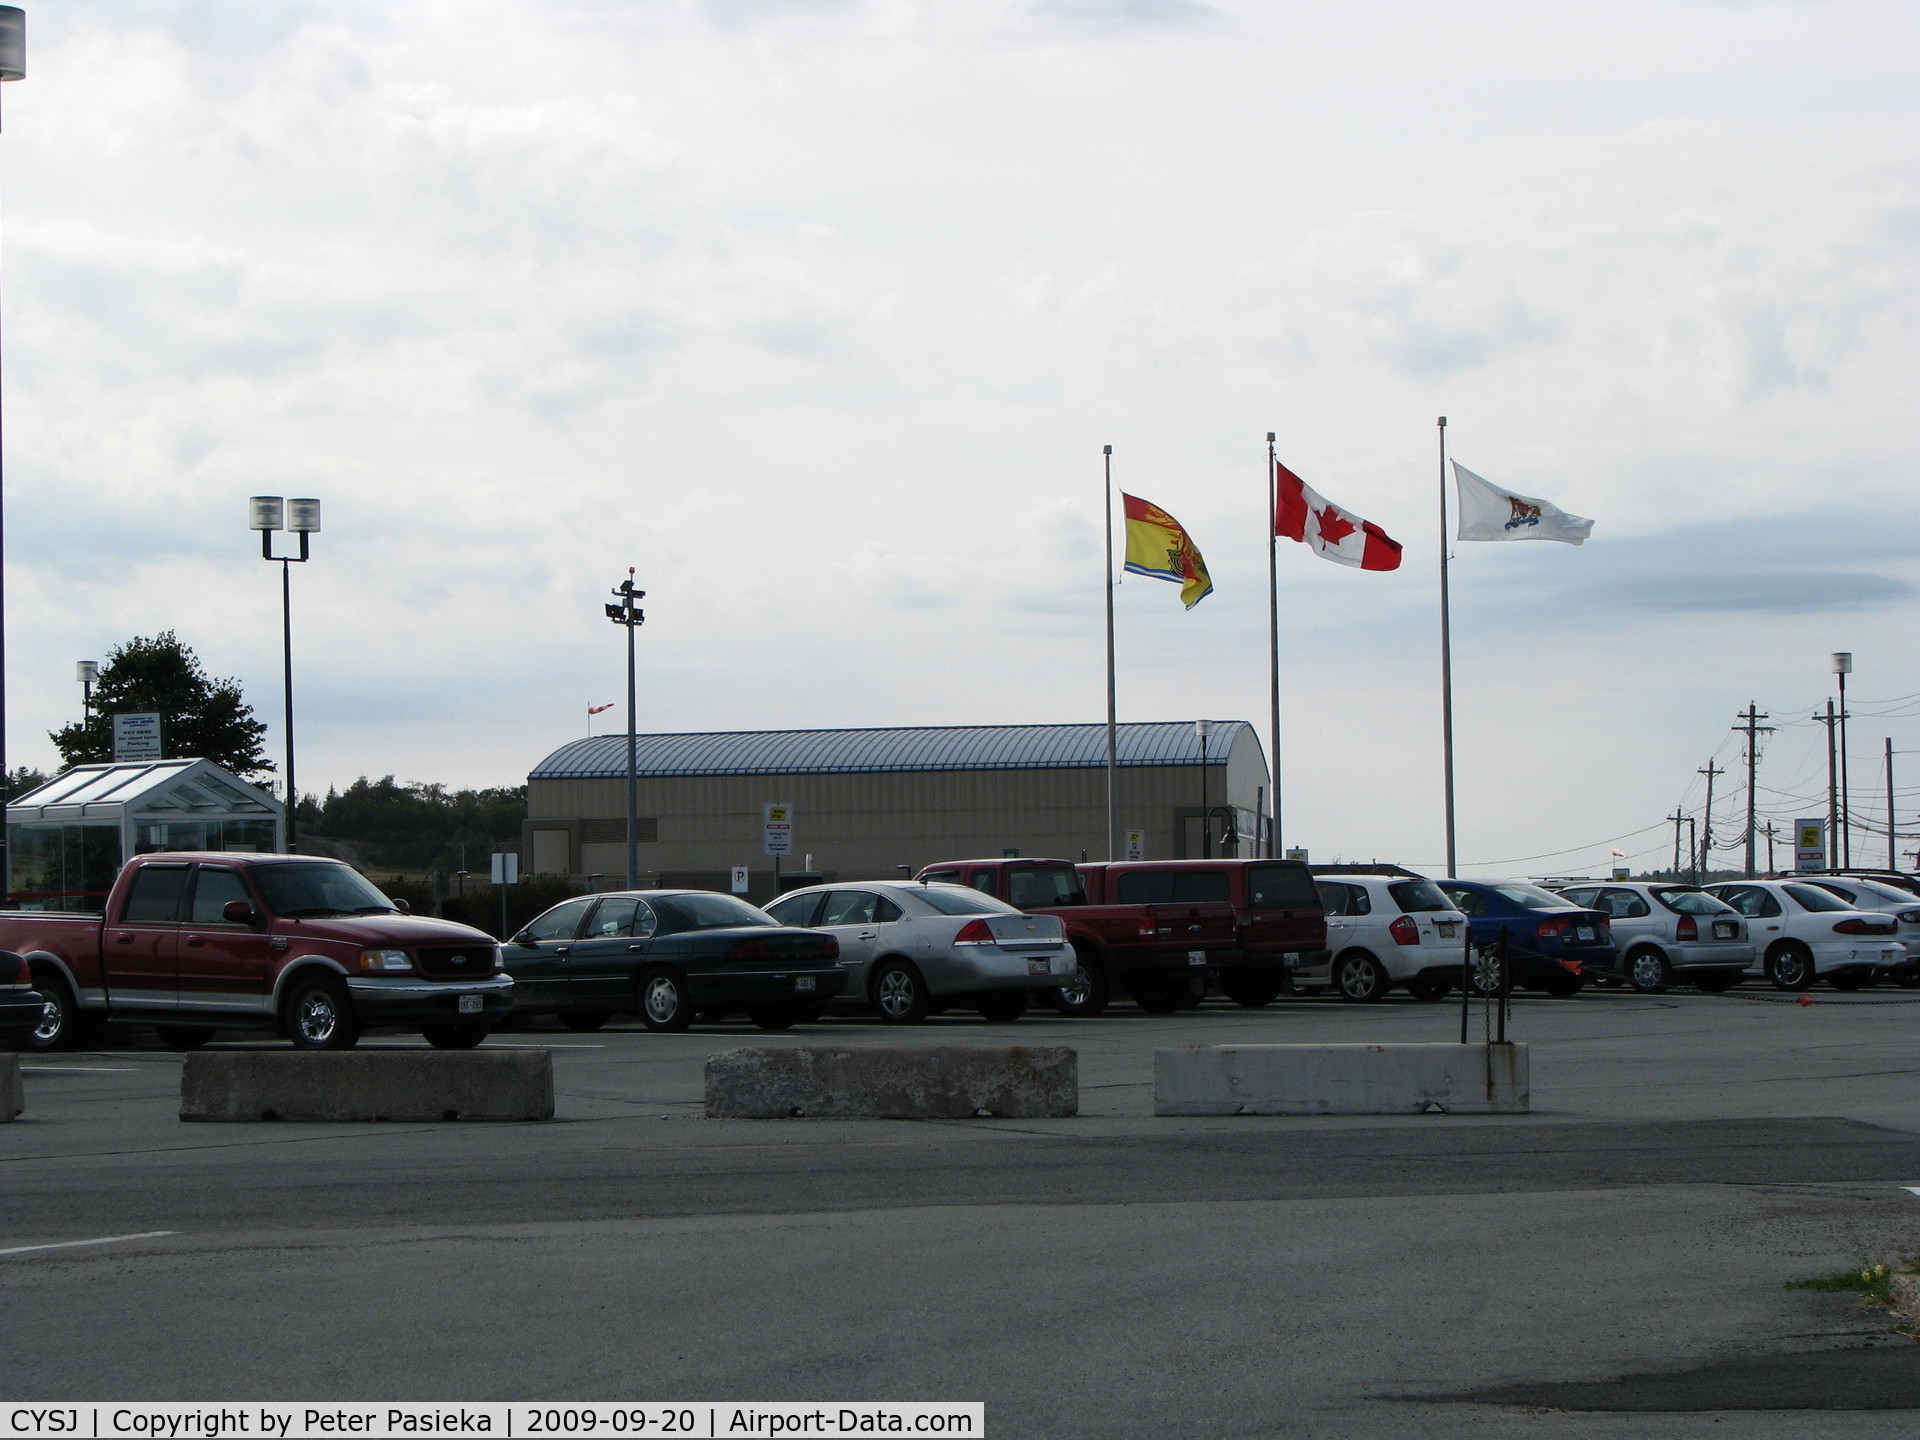 Saint John Airport, Saint John, New Brunswick Canada (CYSJ) - Flags flying near the main parking lot at the Saint John Airport